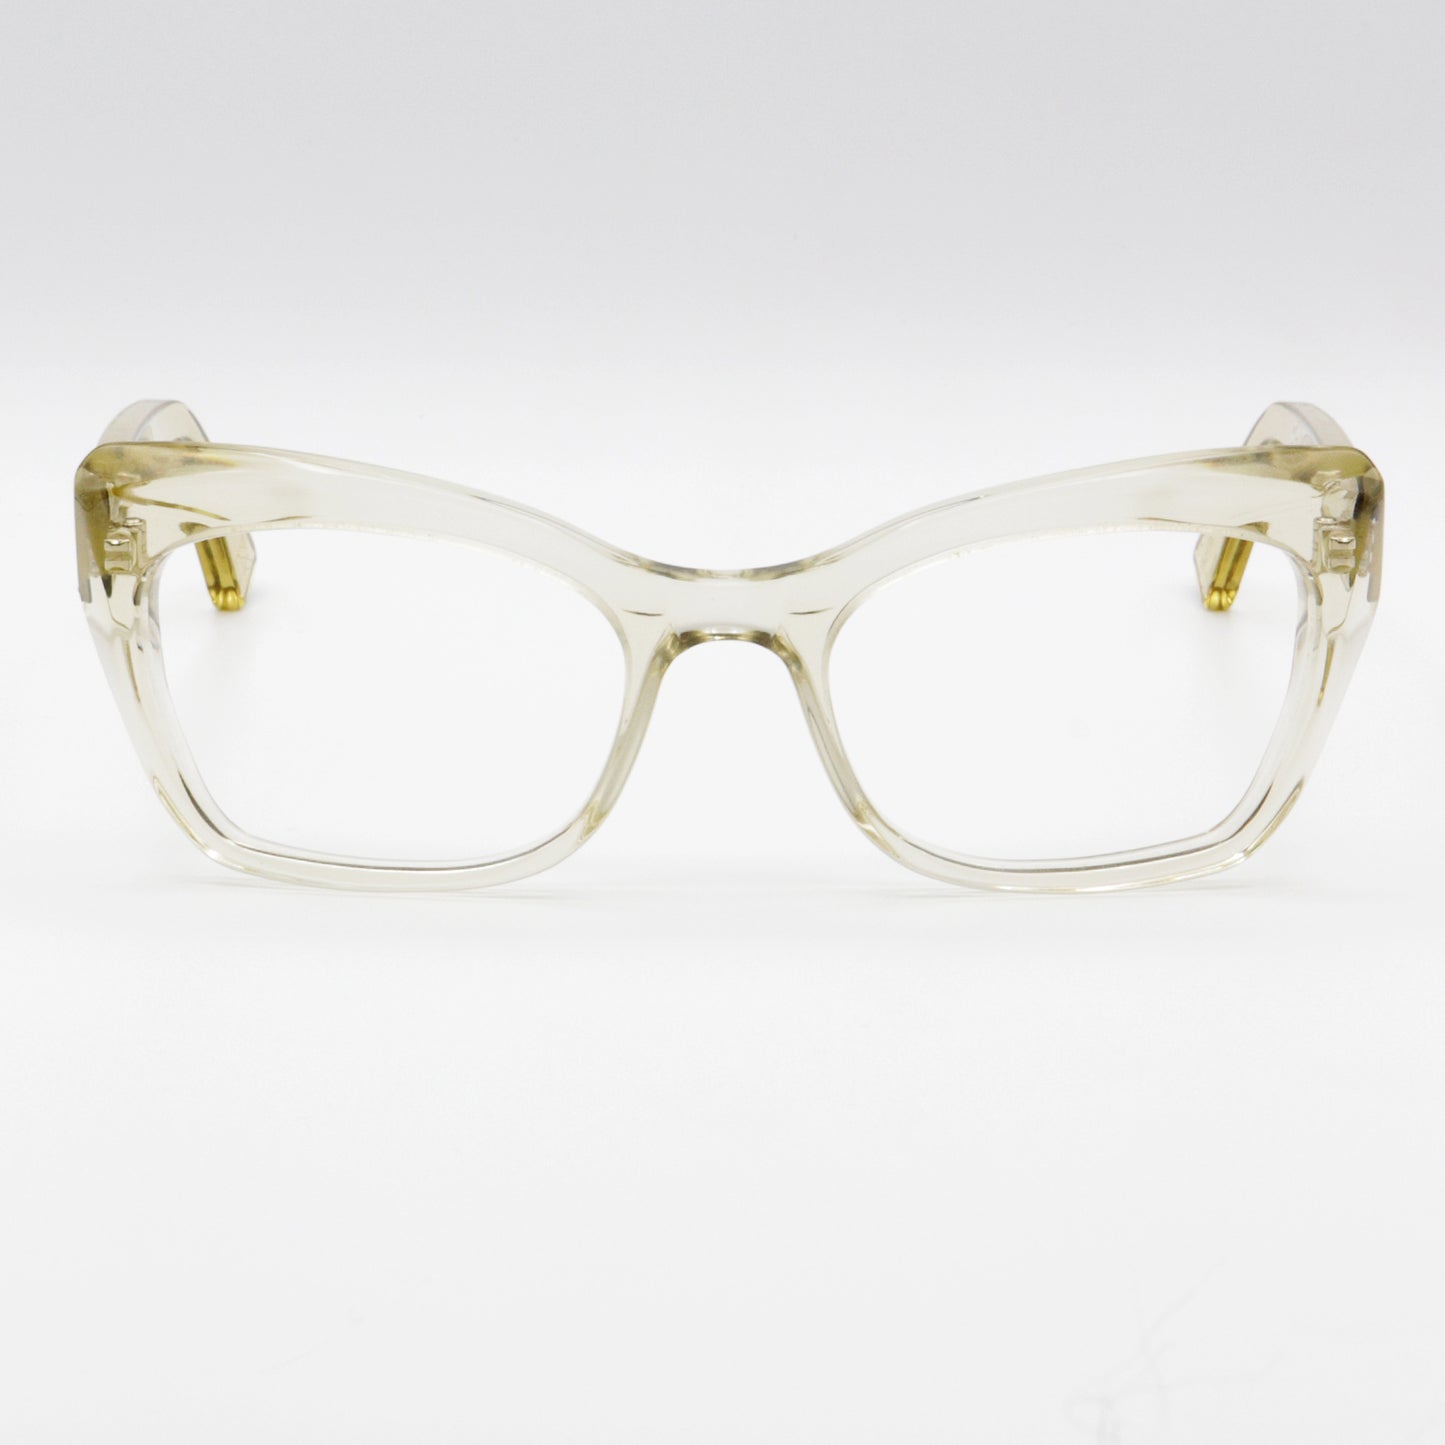 Hana K7 Kirk & Kirk Optical Glasses